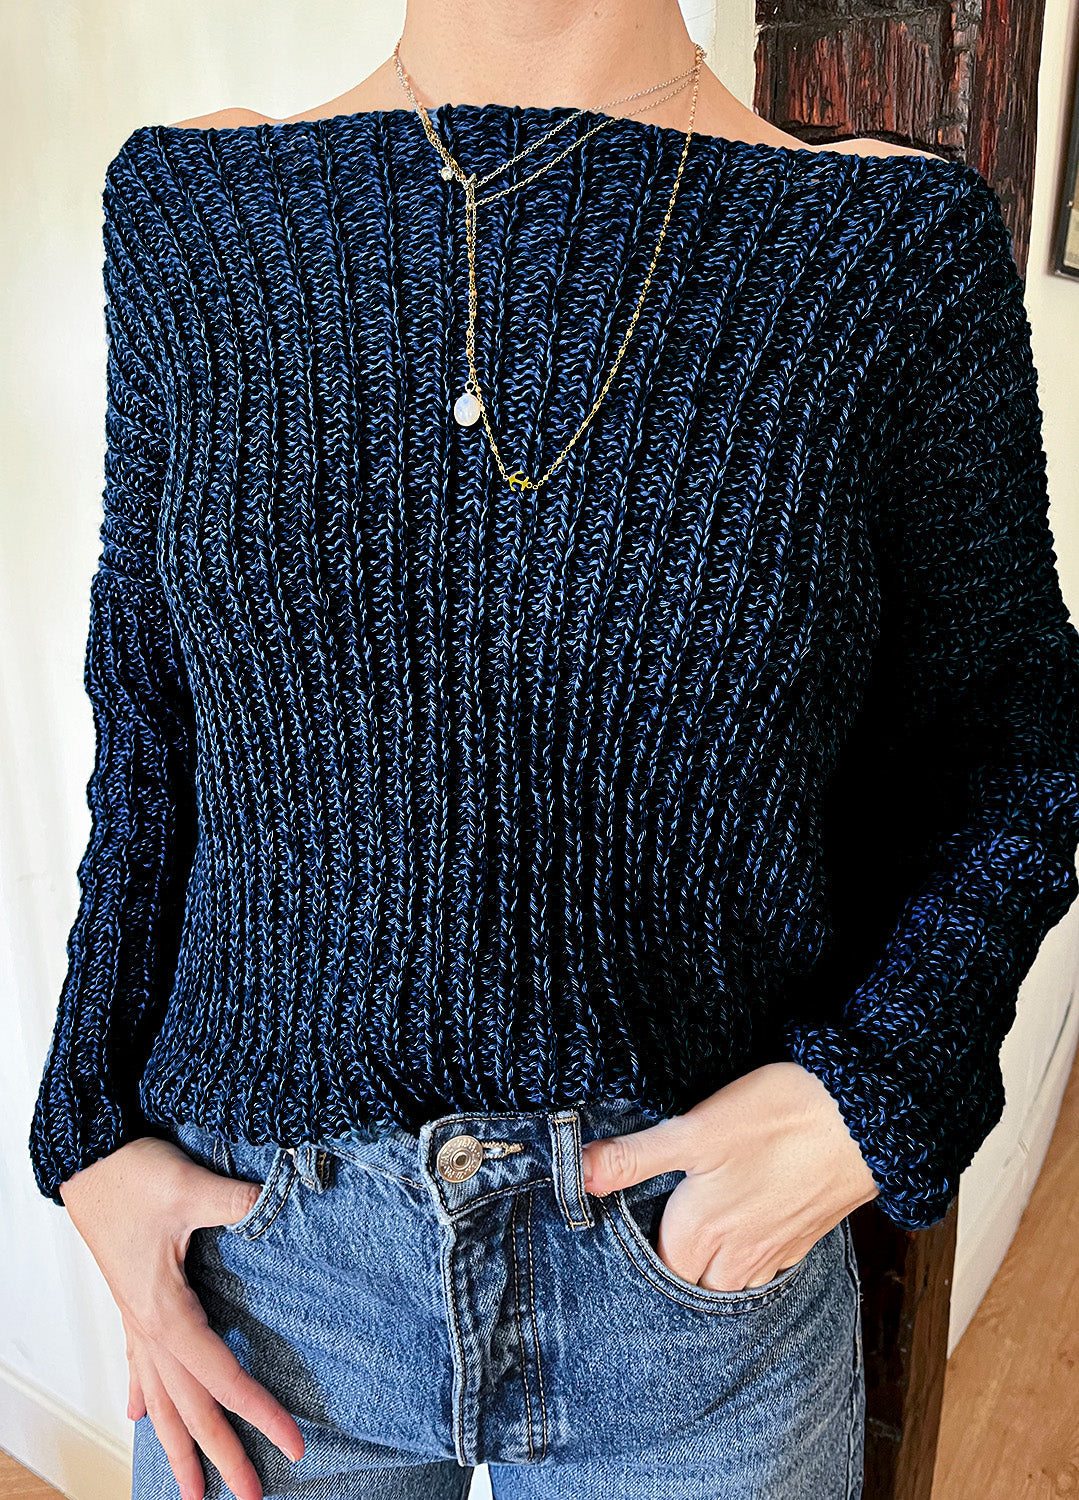 Babylon Sweater Kit